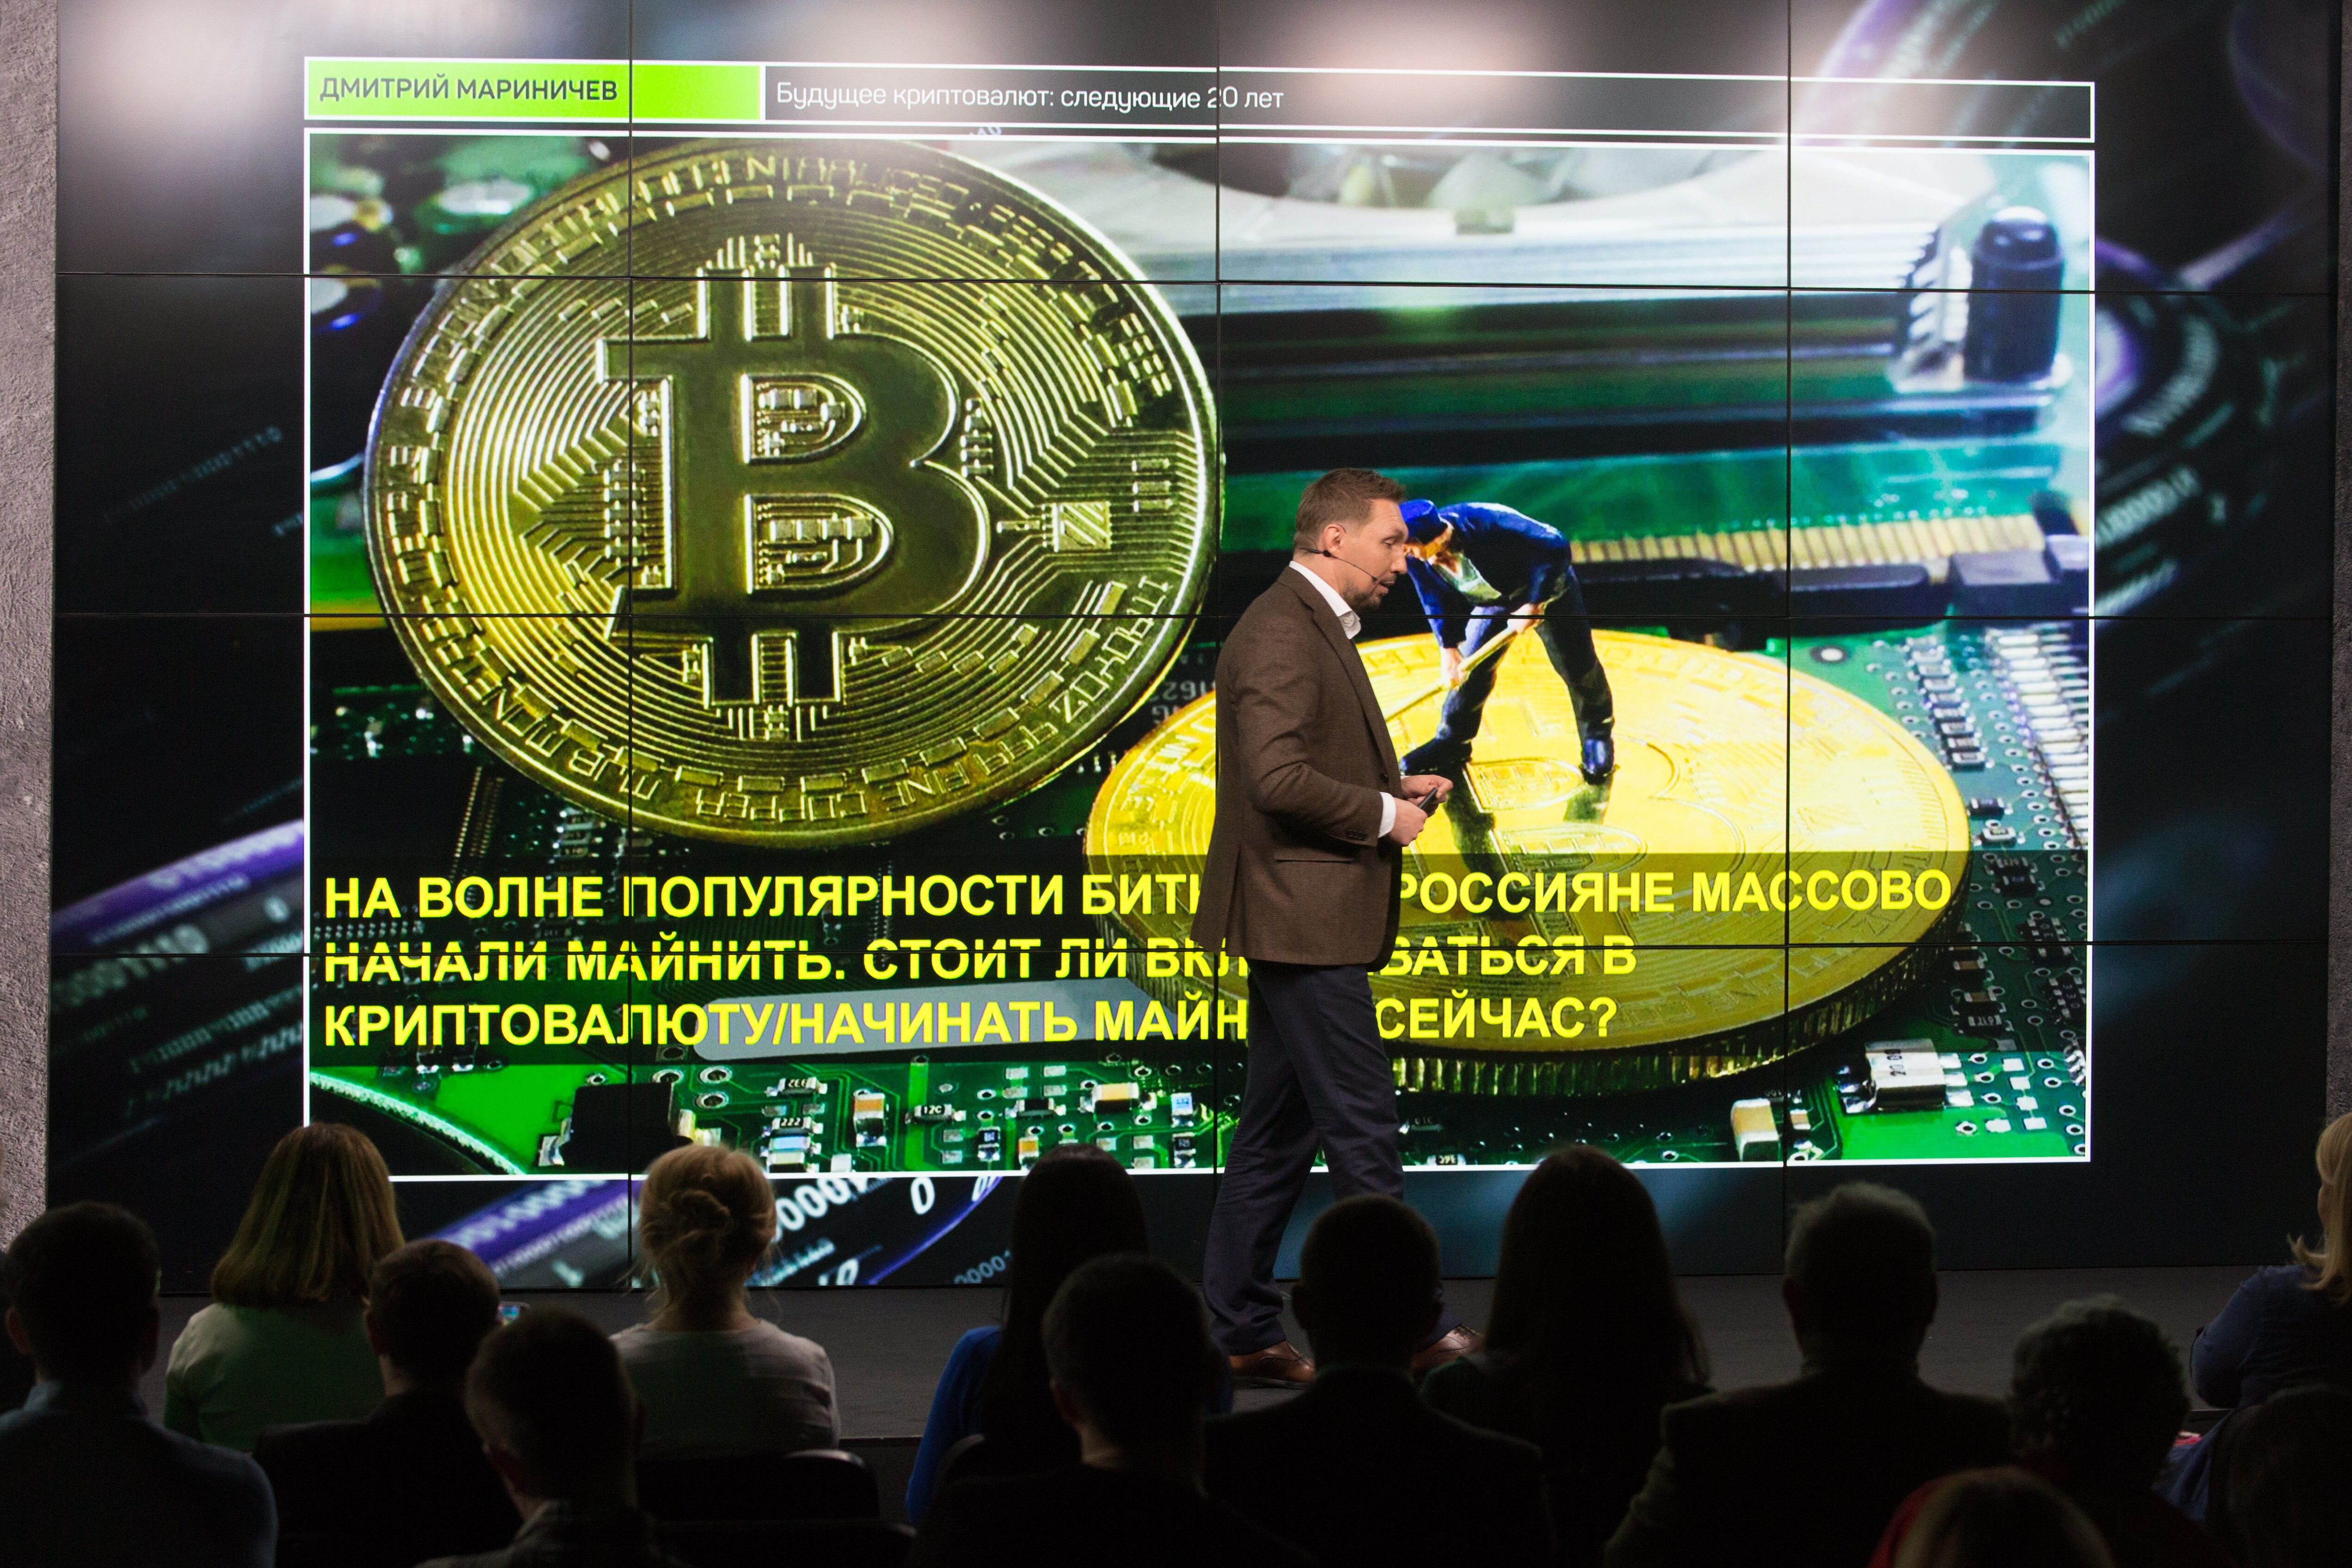 На волне популярности биткоина россияне массово начали майнить. Стоит ли вкладываться в криптовалюту и/или начинать майнить сейчас?